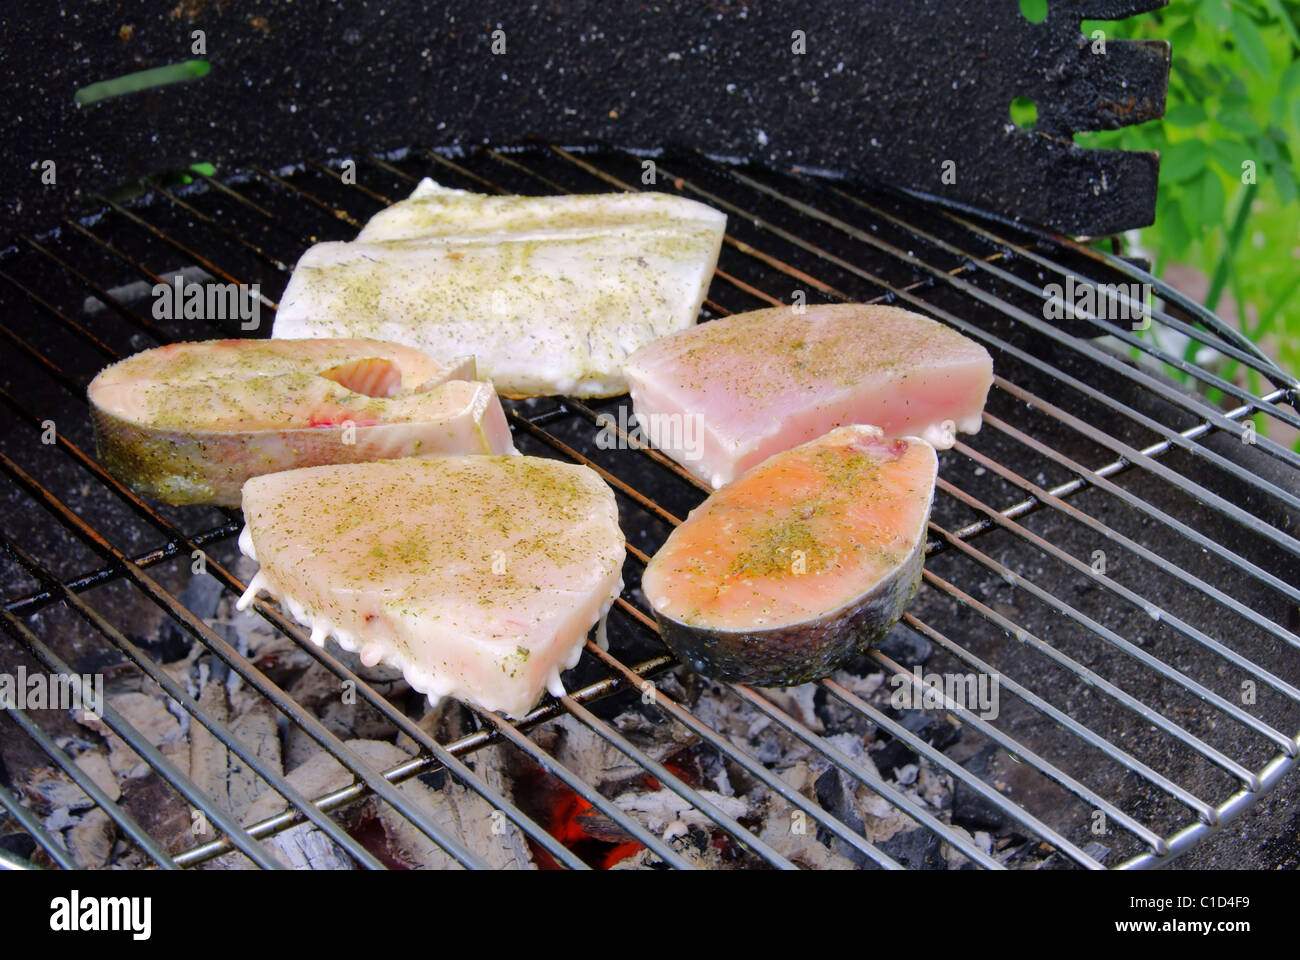 Grillen Fischsteak - Grillen Steak vom Fisch 18 Stockfoto